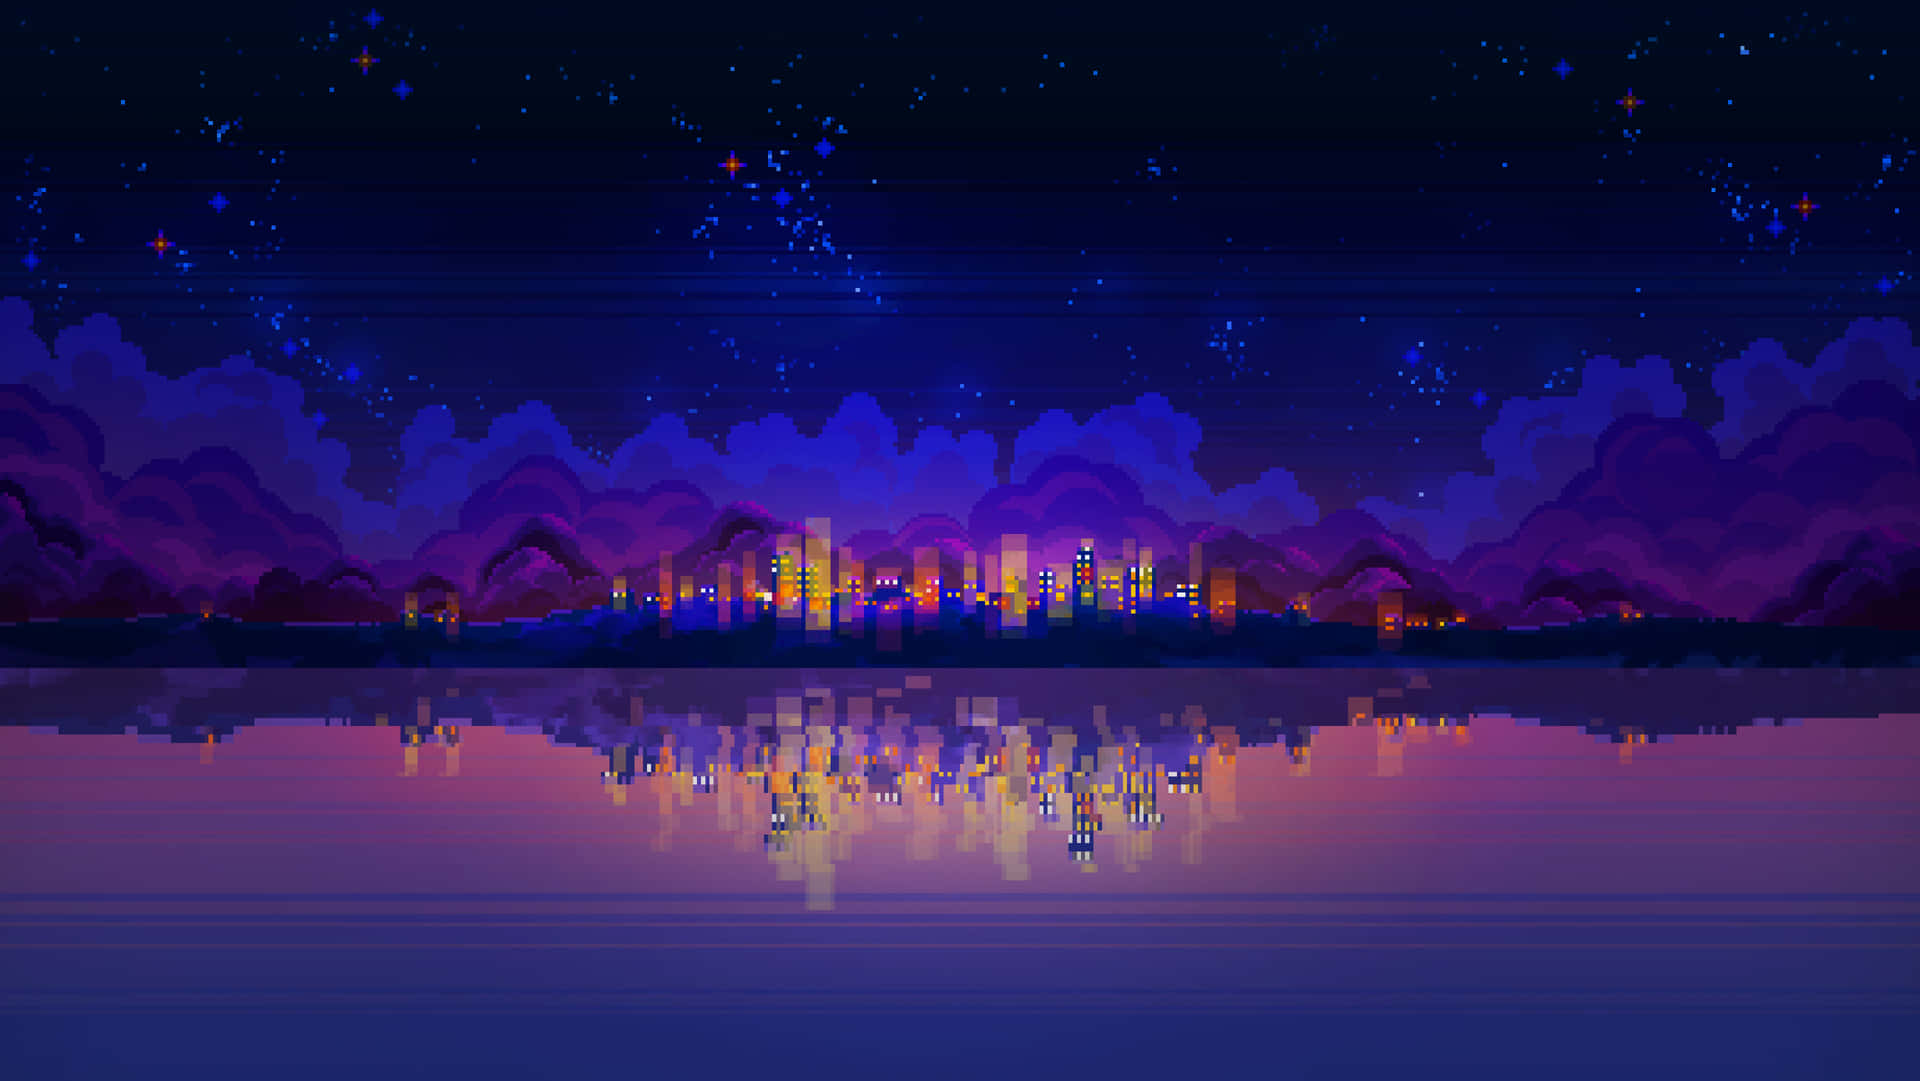 "Vibrant Pixel Landscape With Rich Colors" Wallpaper